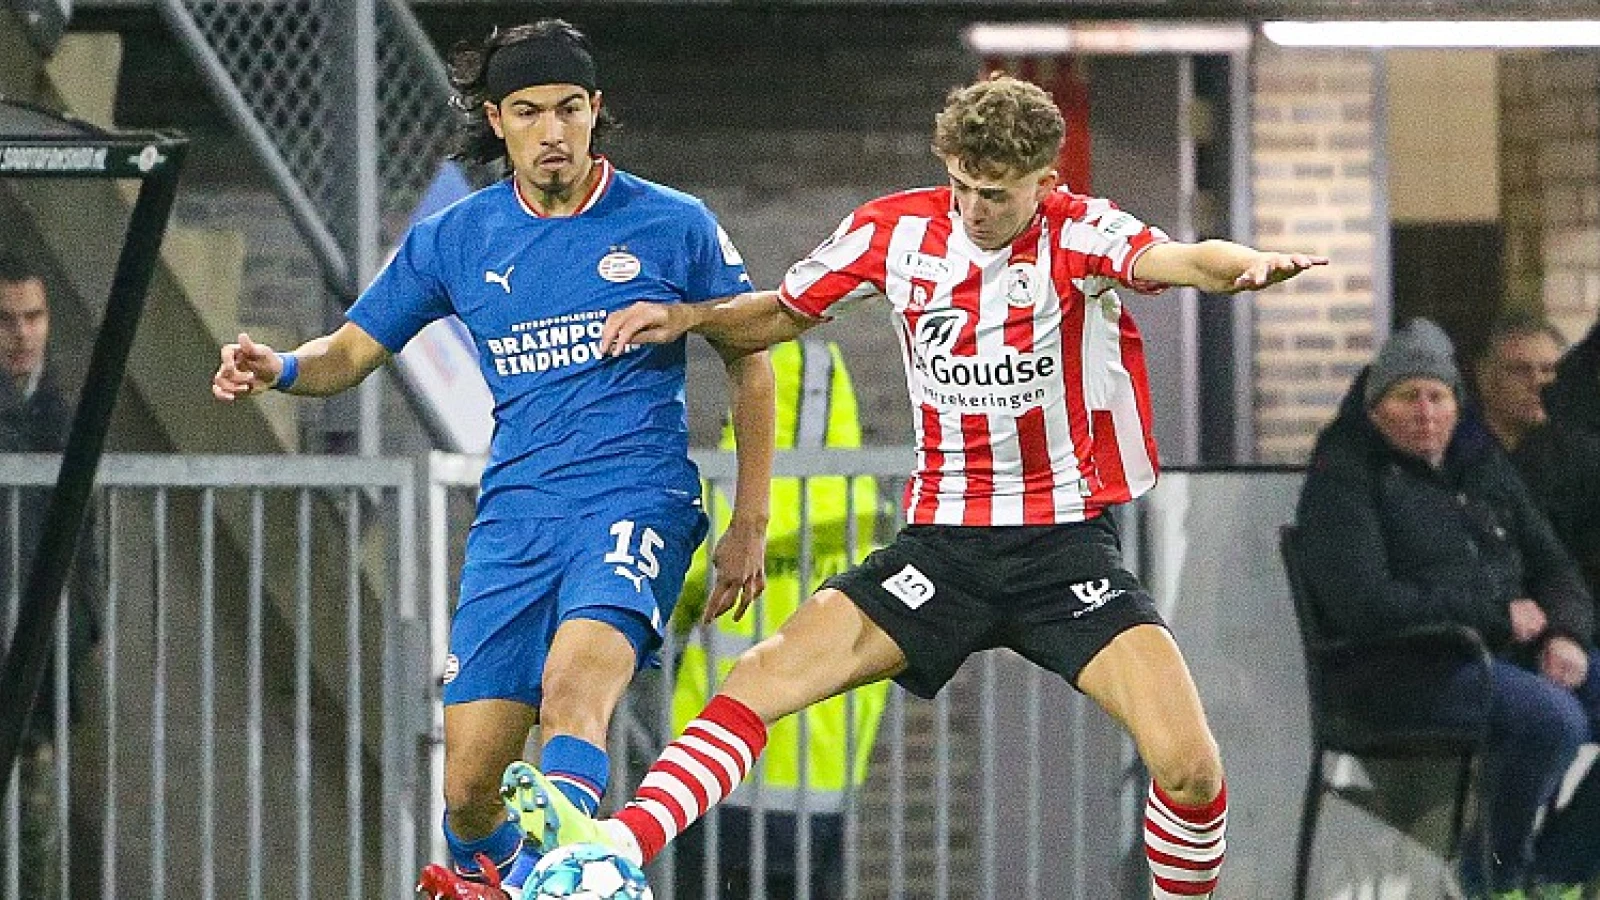 'Feyenoord brengt na wedstrijd tegen FC Twente bod uit op Mijnans'